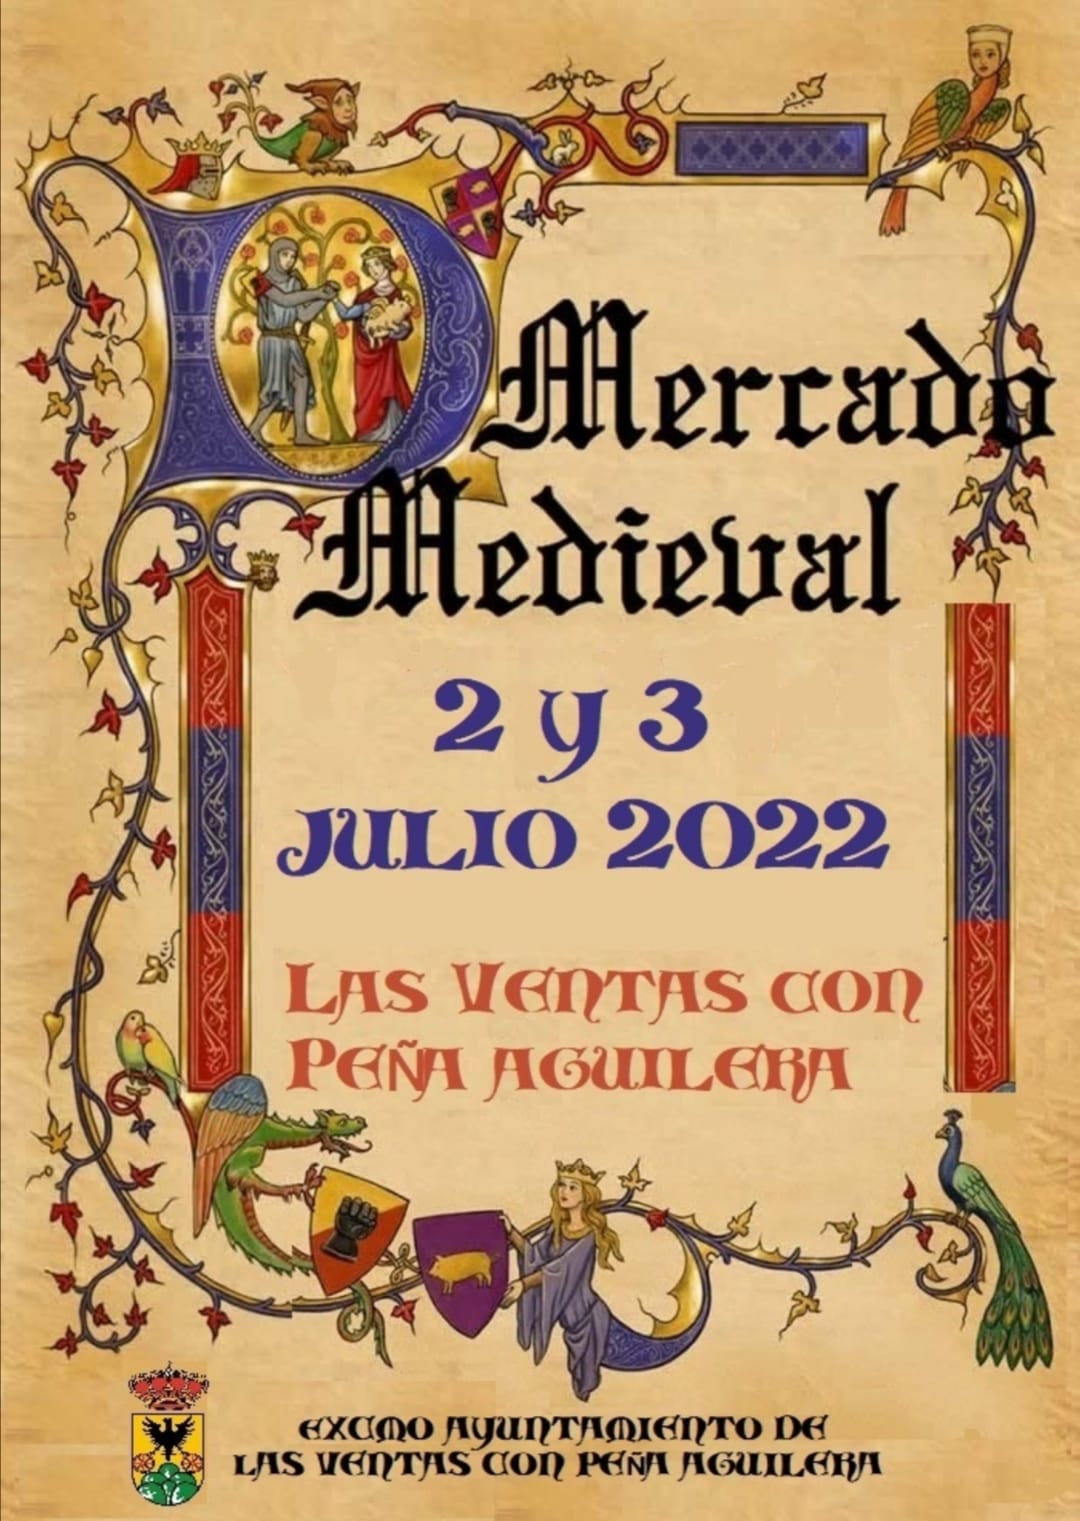 220513 – Actualidad – Mercado Medieval